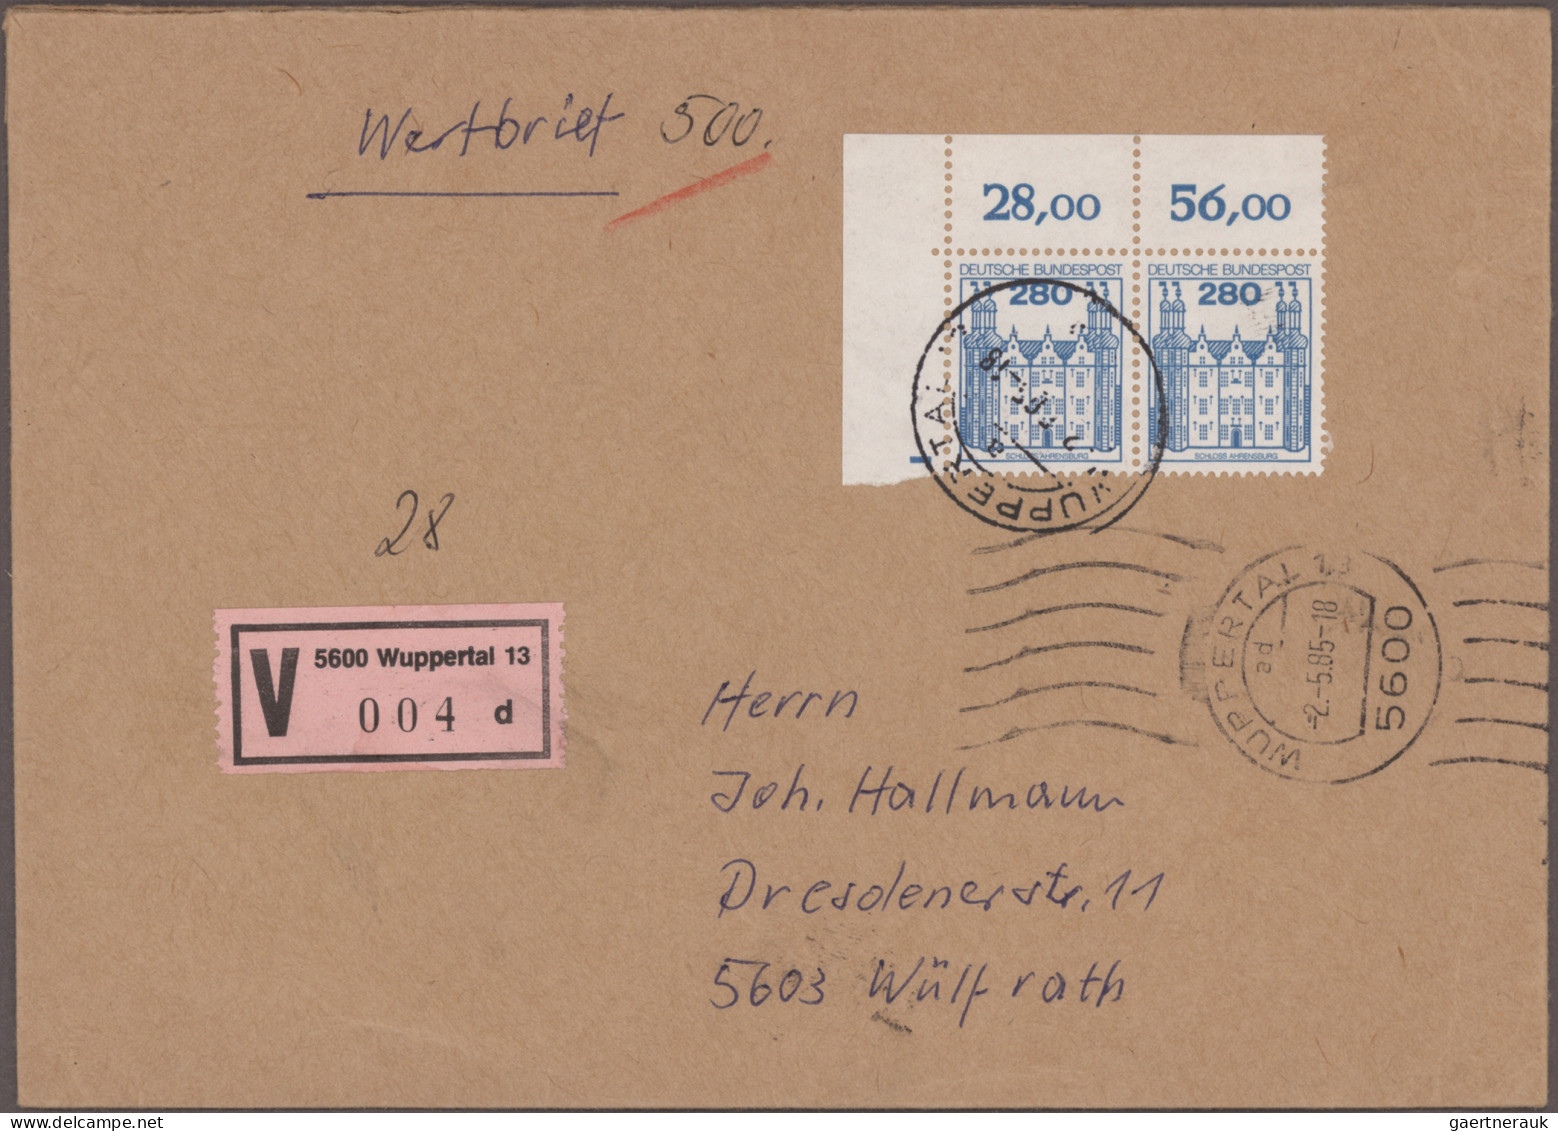 Nachlässe: Gewaltiger Posten Briefe und Karten "Nachkriegsdeutschland" mit siche